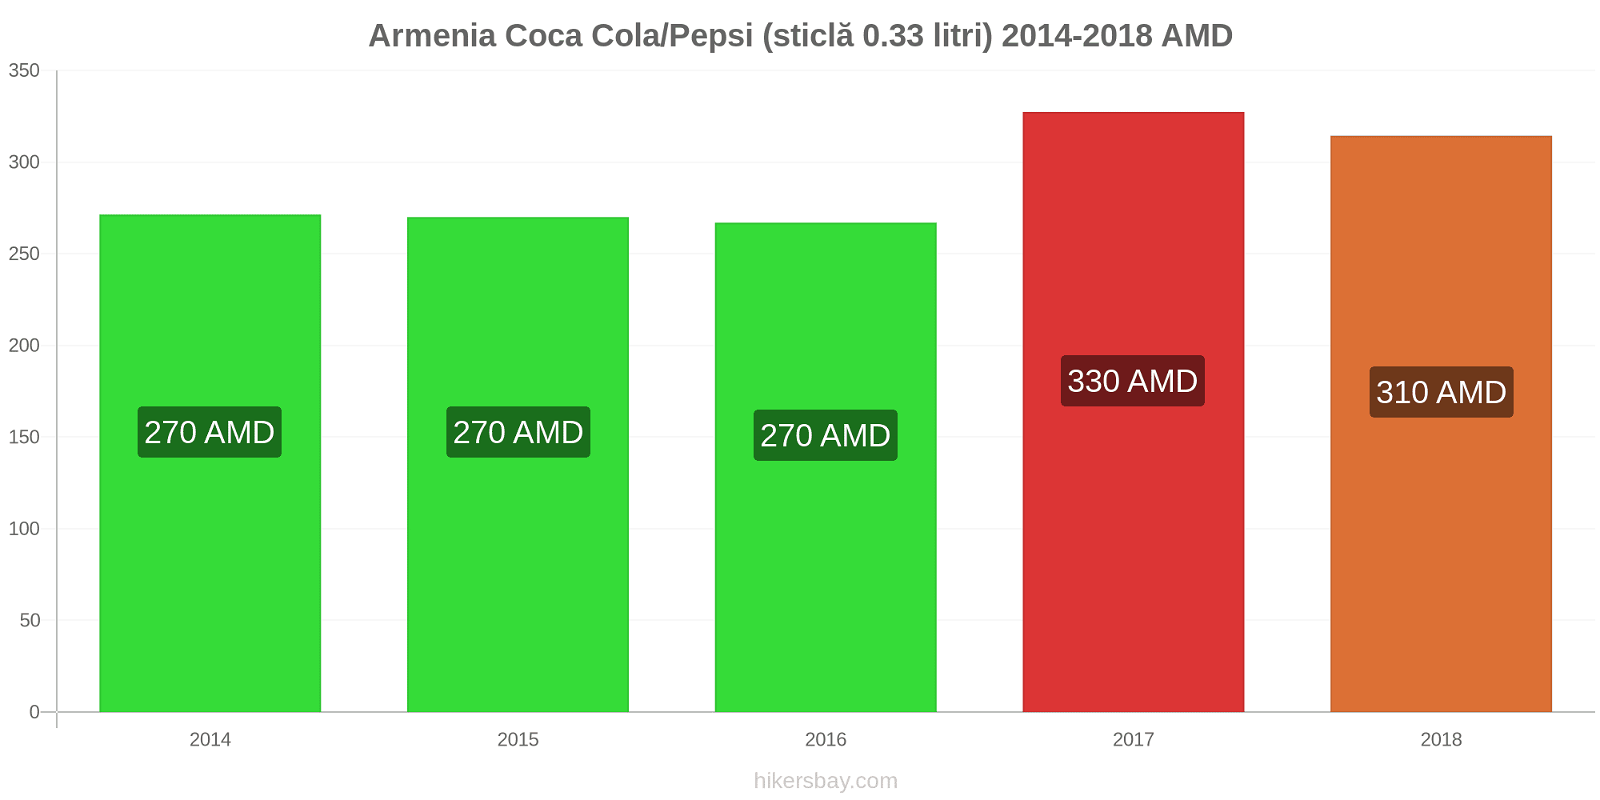 Armenia schimbări de prețuri Coca-Cola/Pepsi (sticlă de 0.33 litri) hikersbay.com